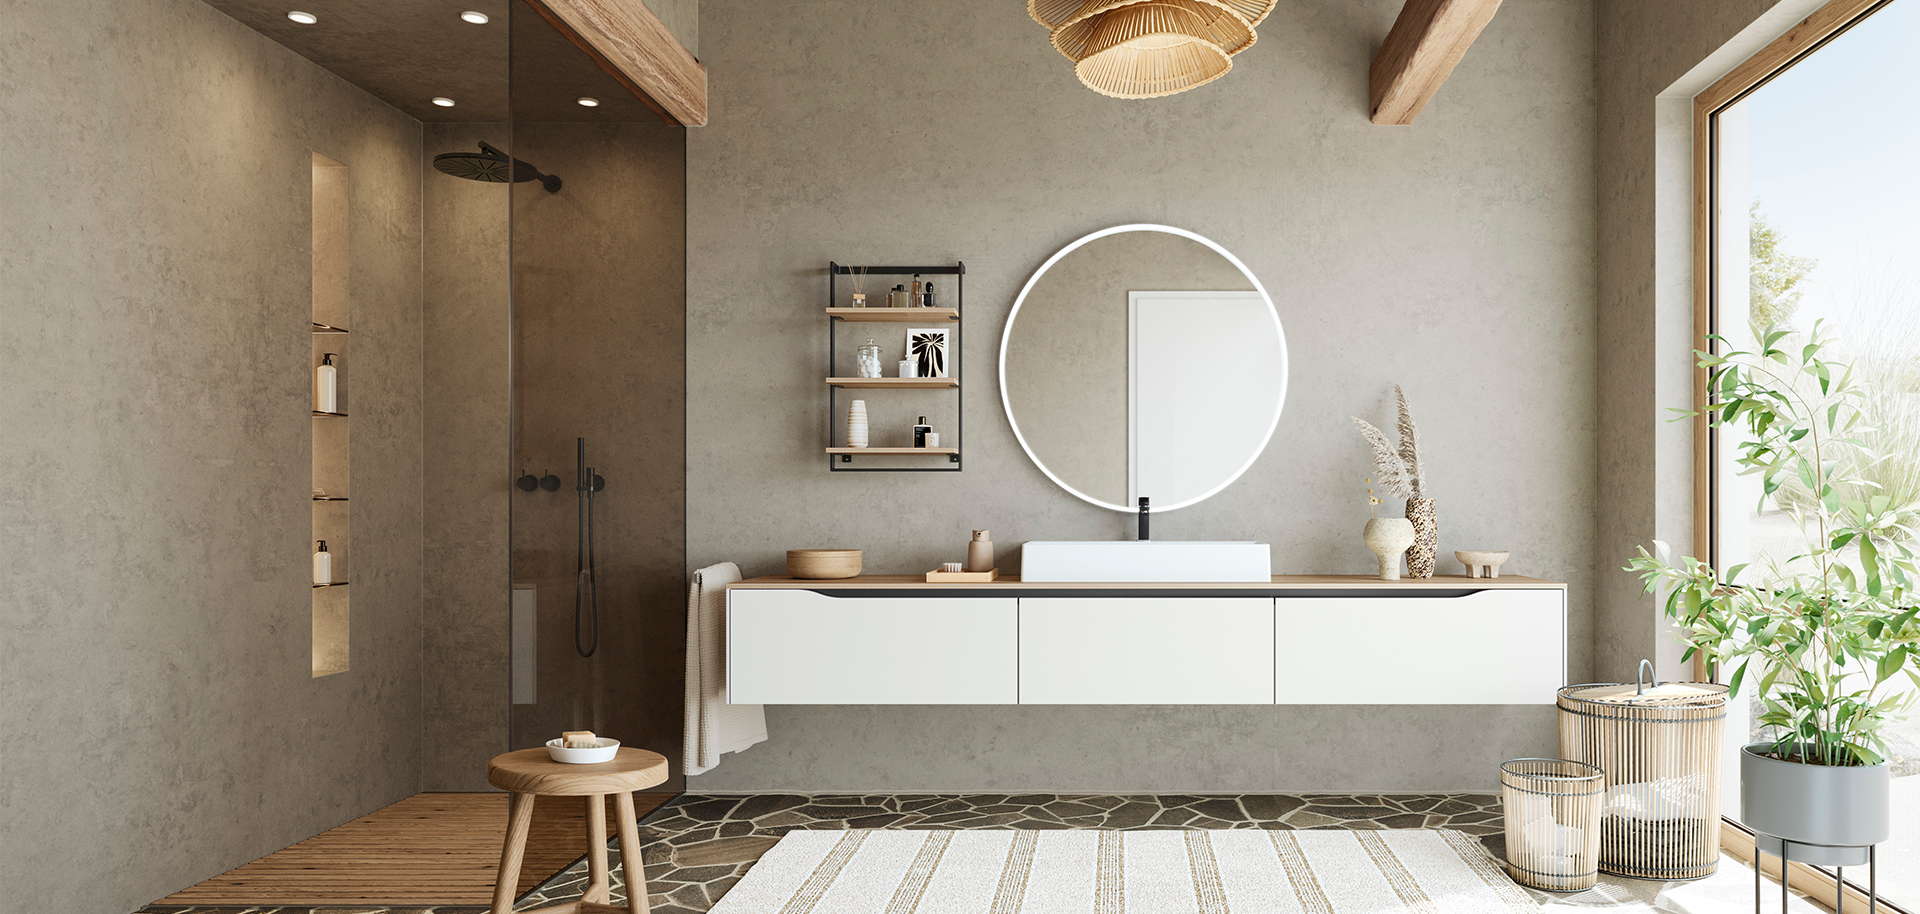 Design minimalista del bagno con un mobile sospeso, specchio rotondo e accenti naturali per uno spazio sereno e elegante.